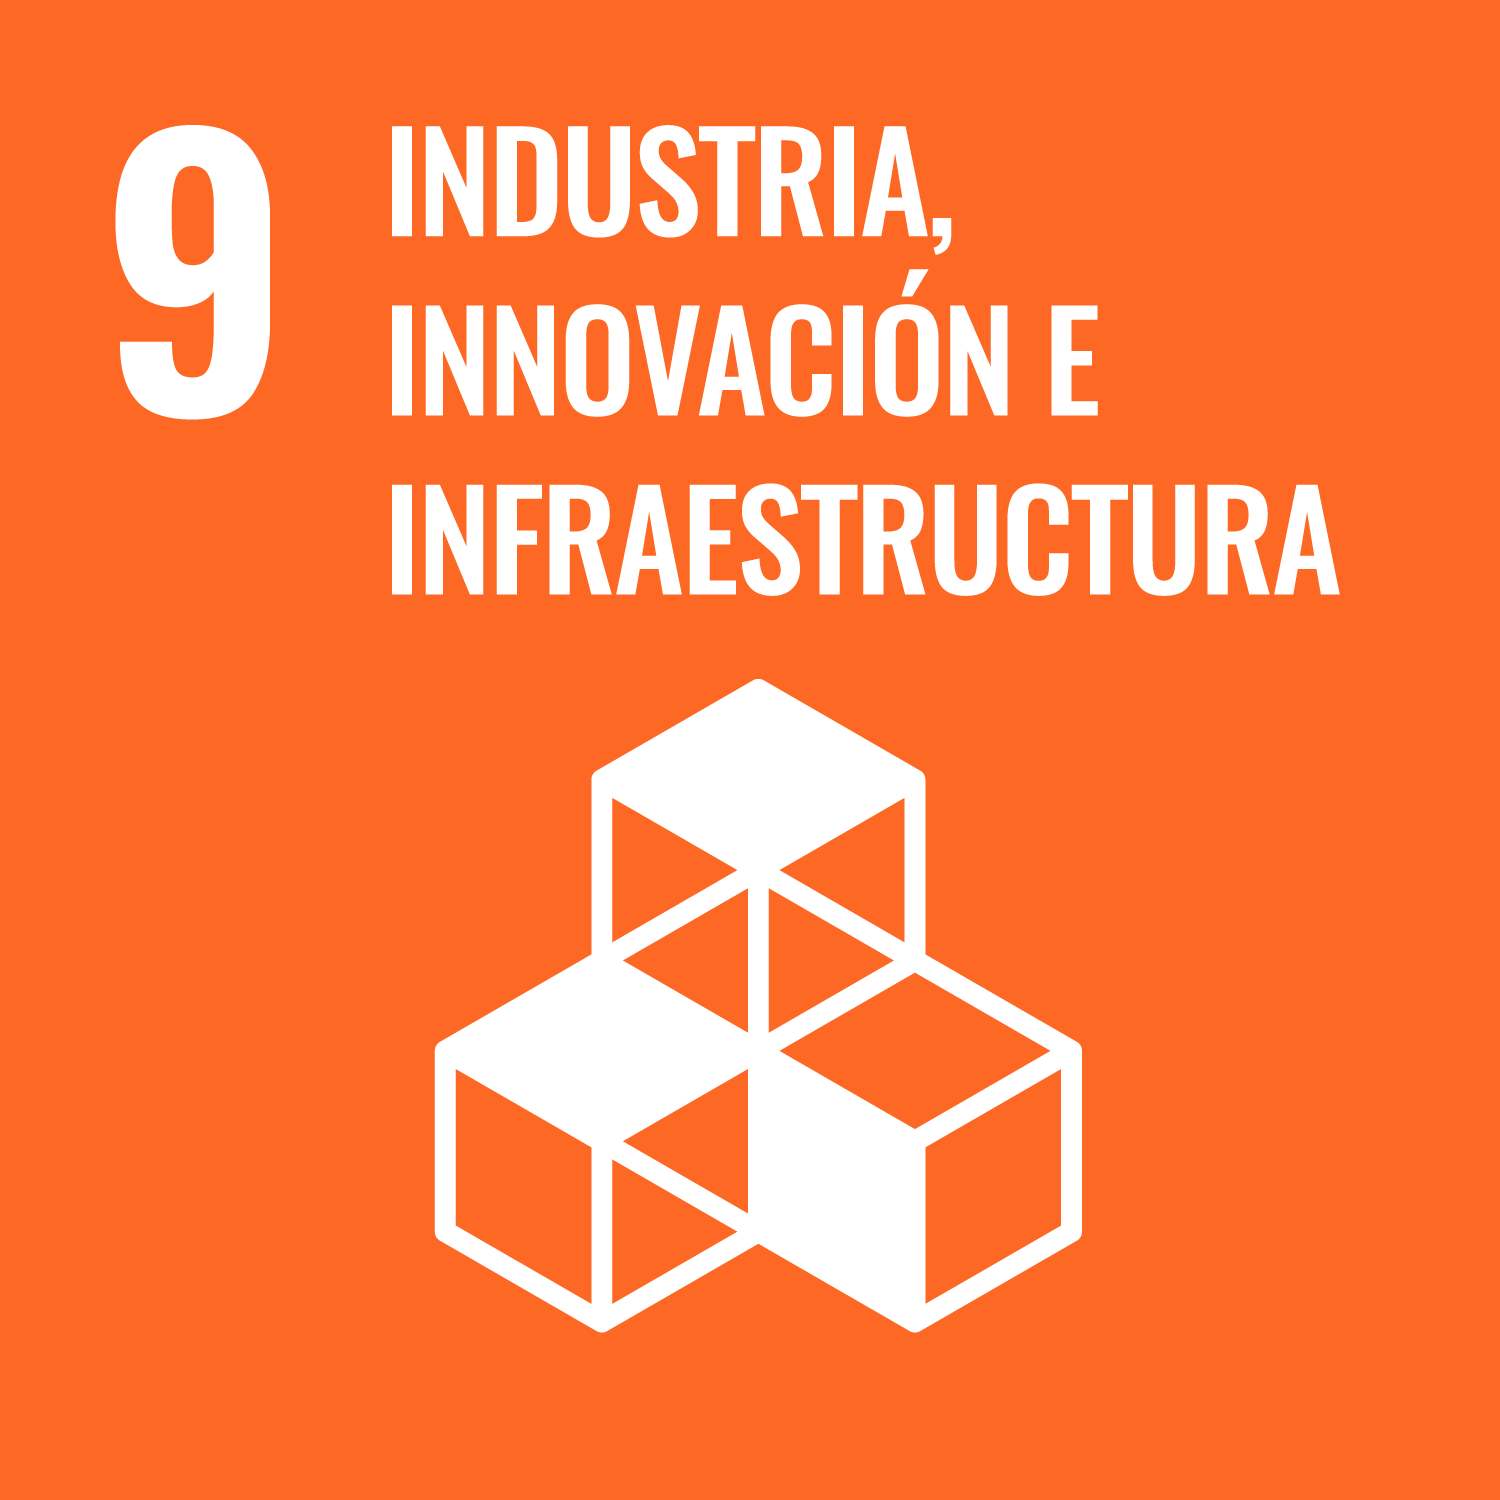 ODS 9</p>
<h5>Industria, innovación e infraestructura</h5>
<p>